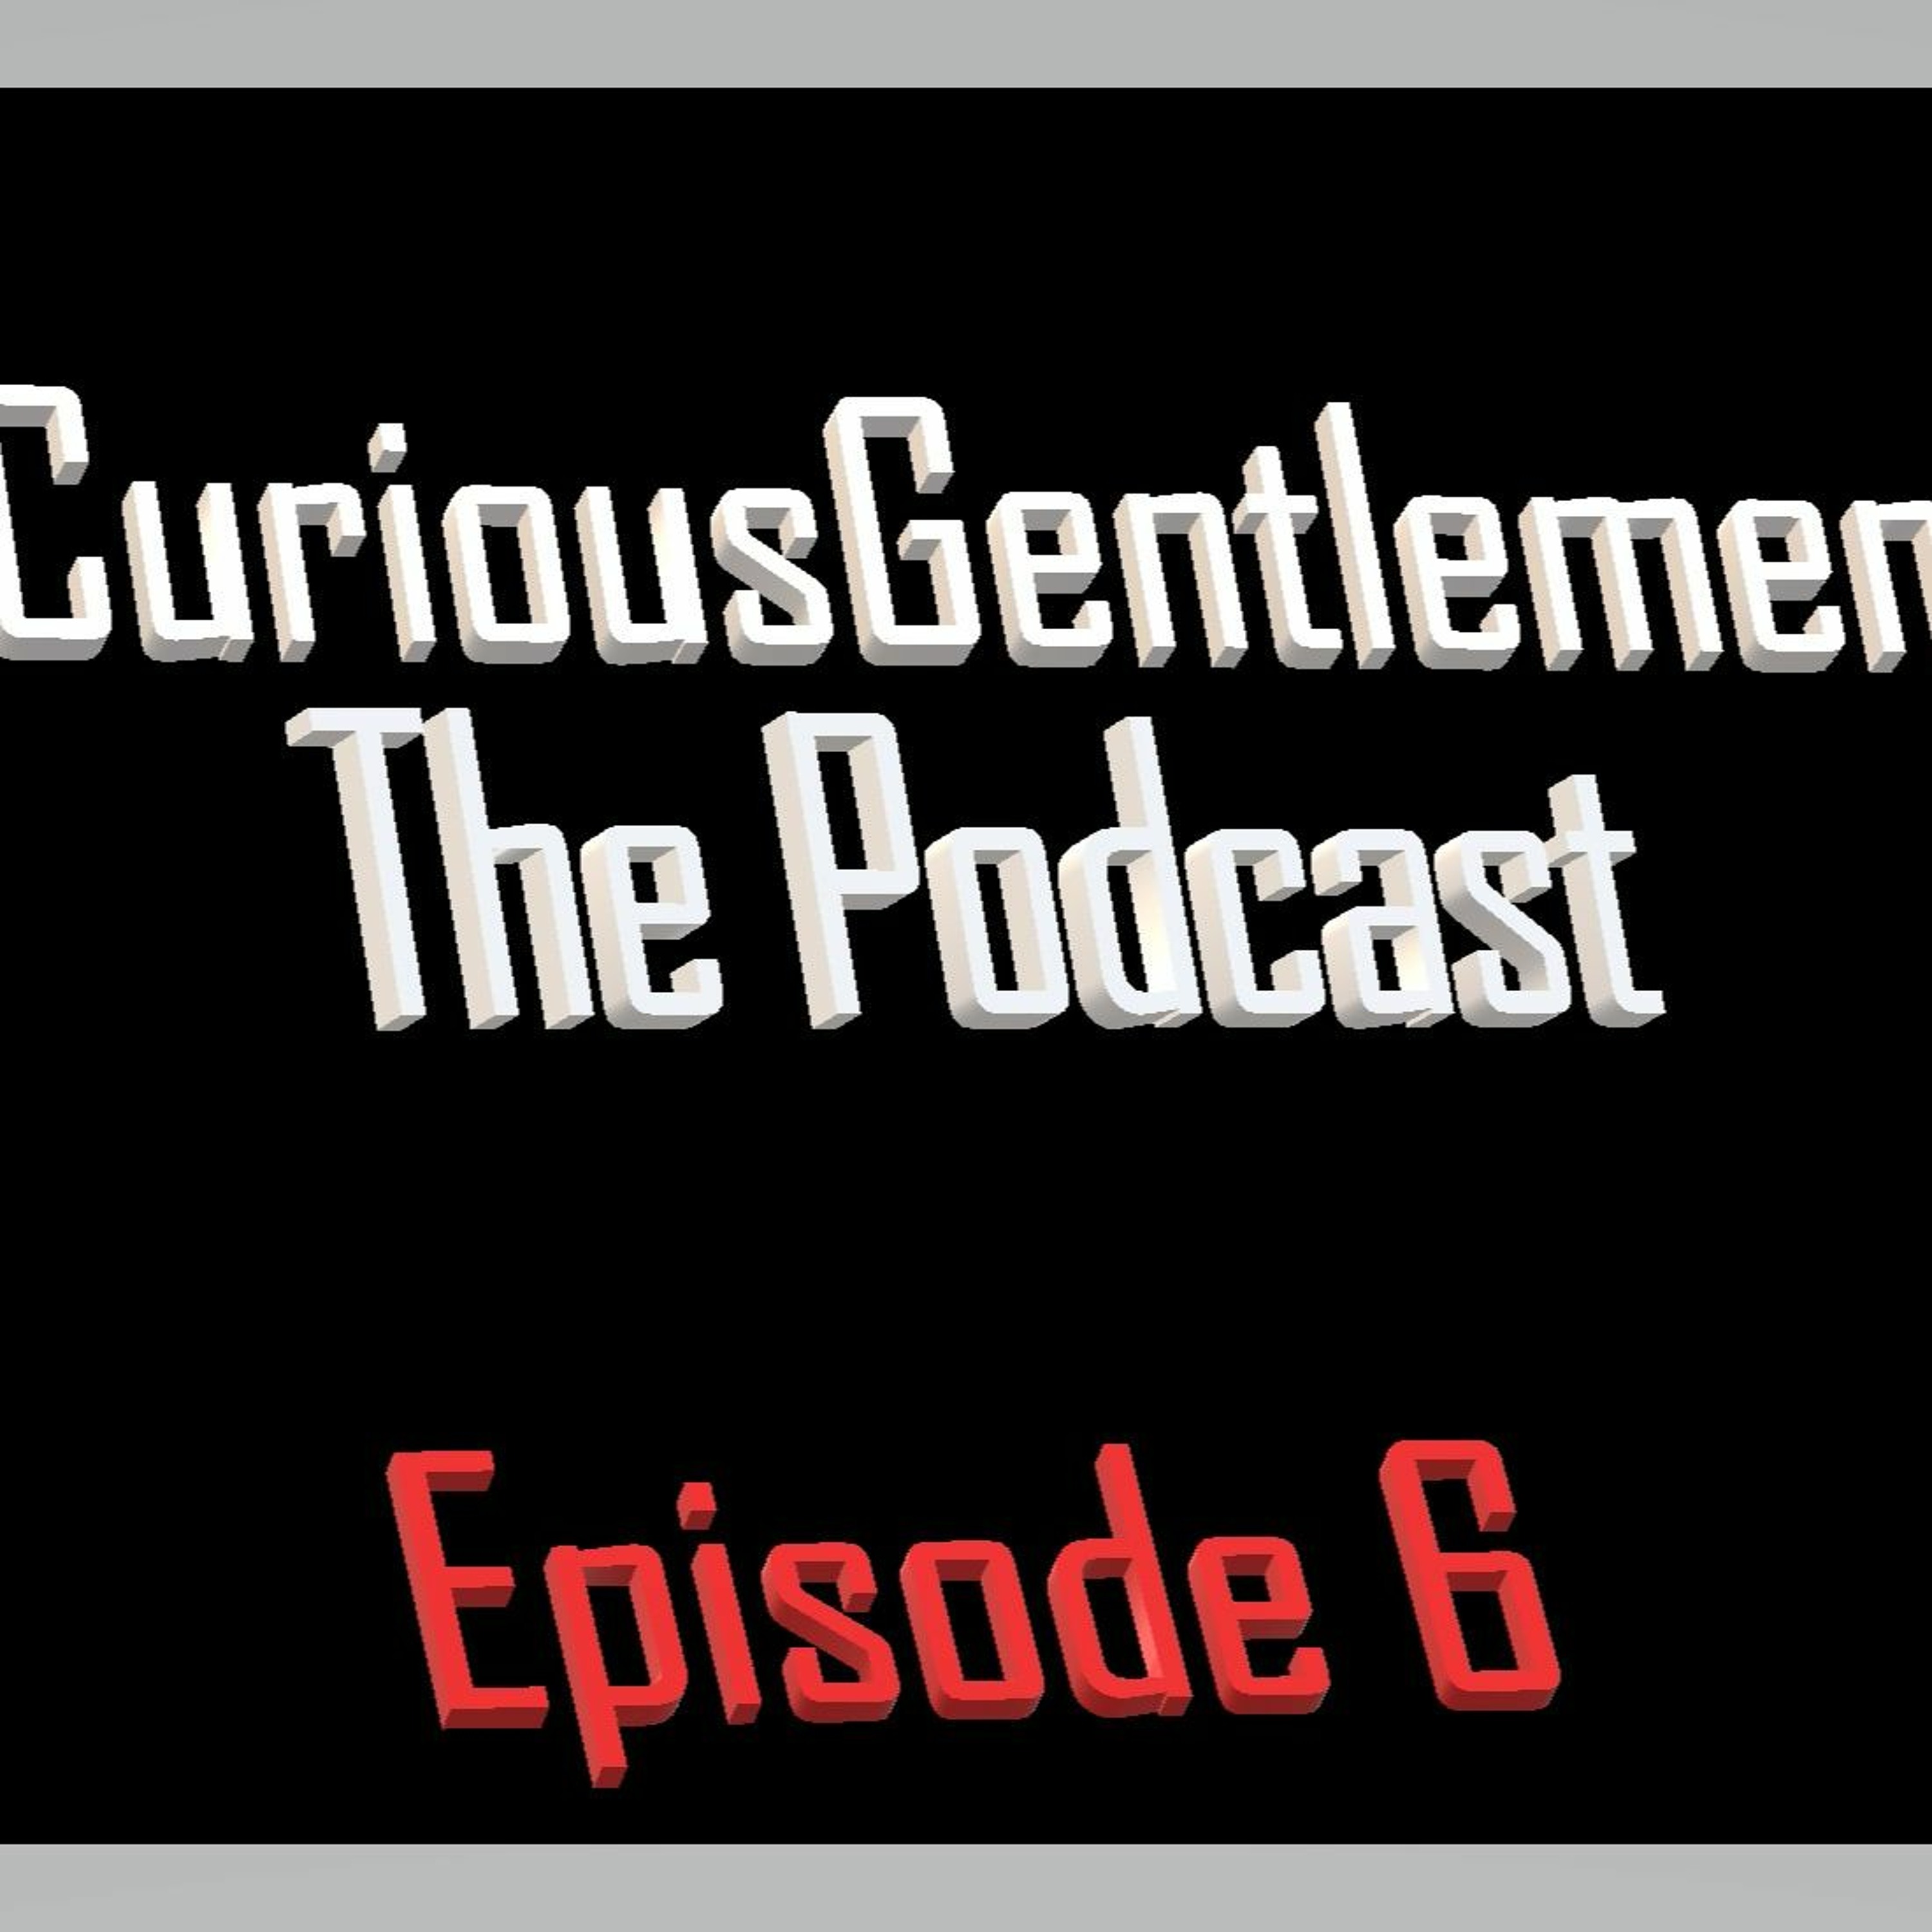 Curious Gentlemen Episode 4